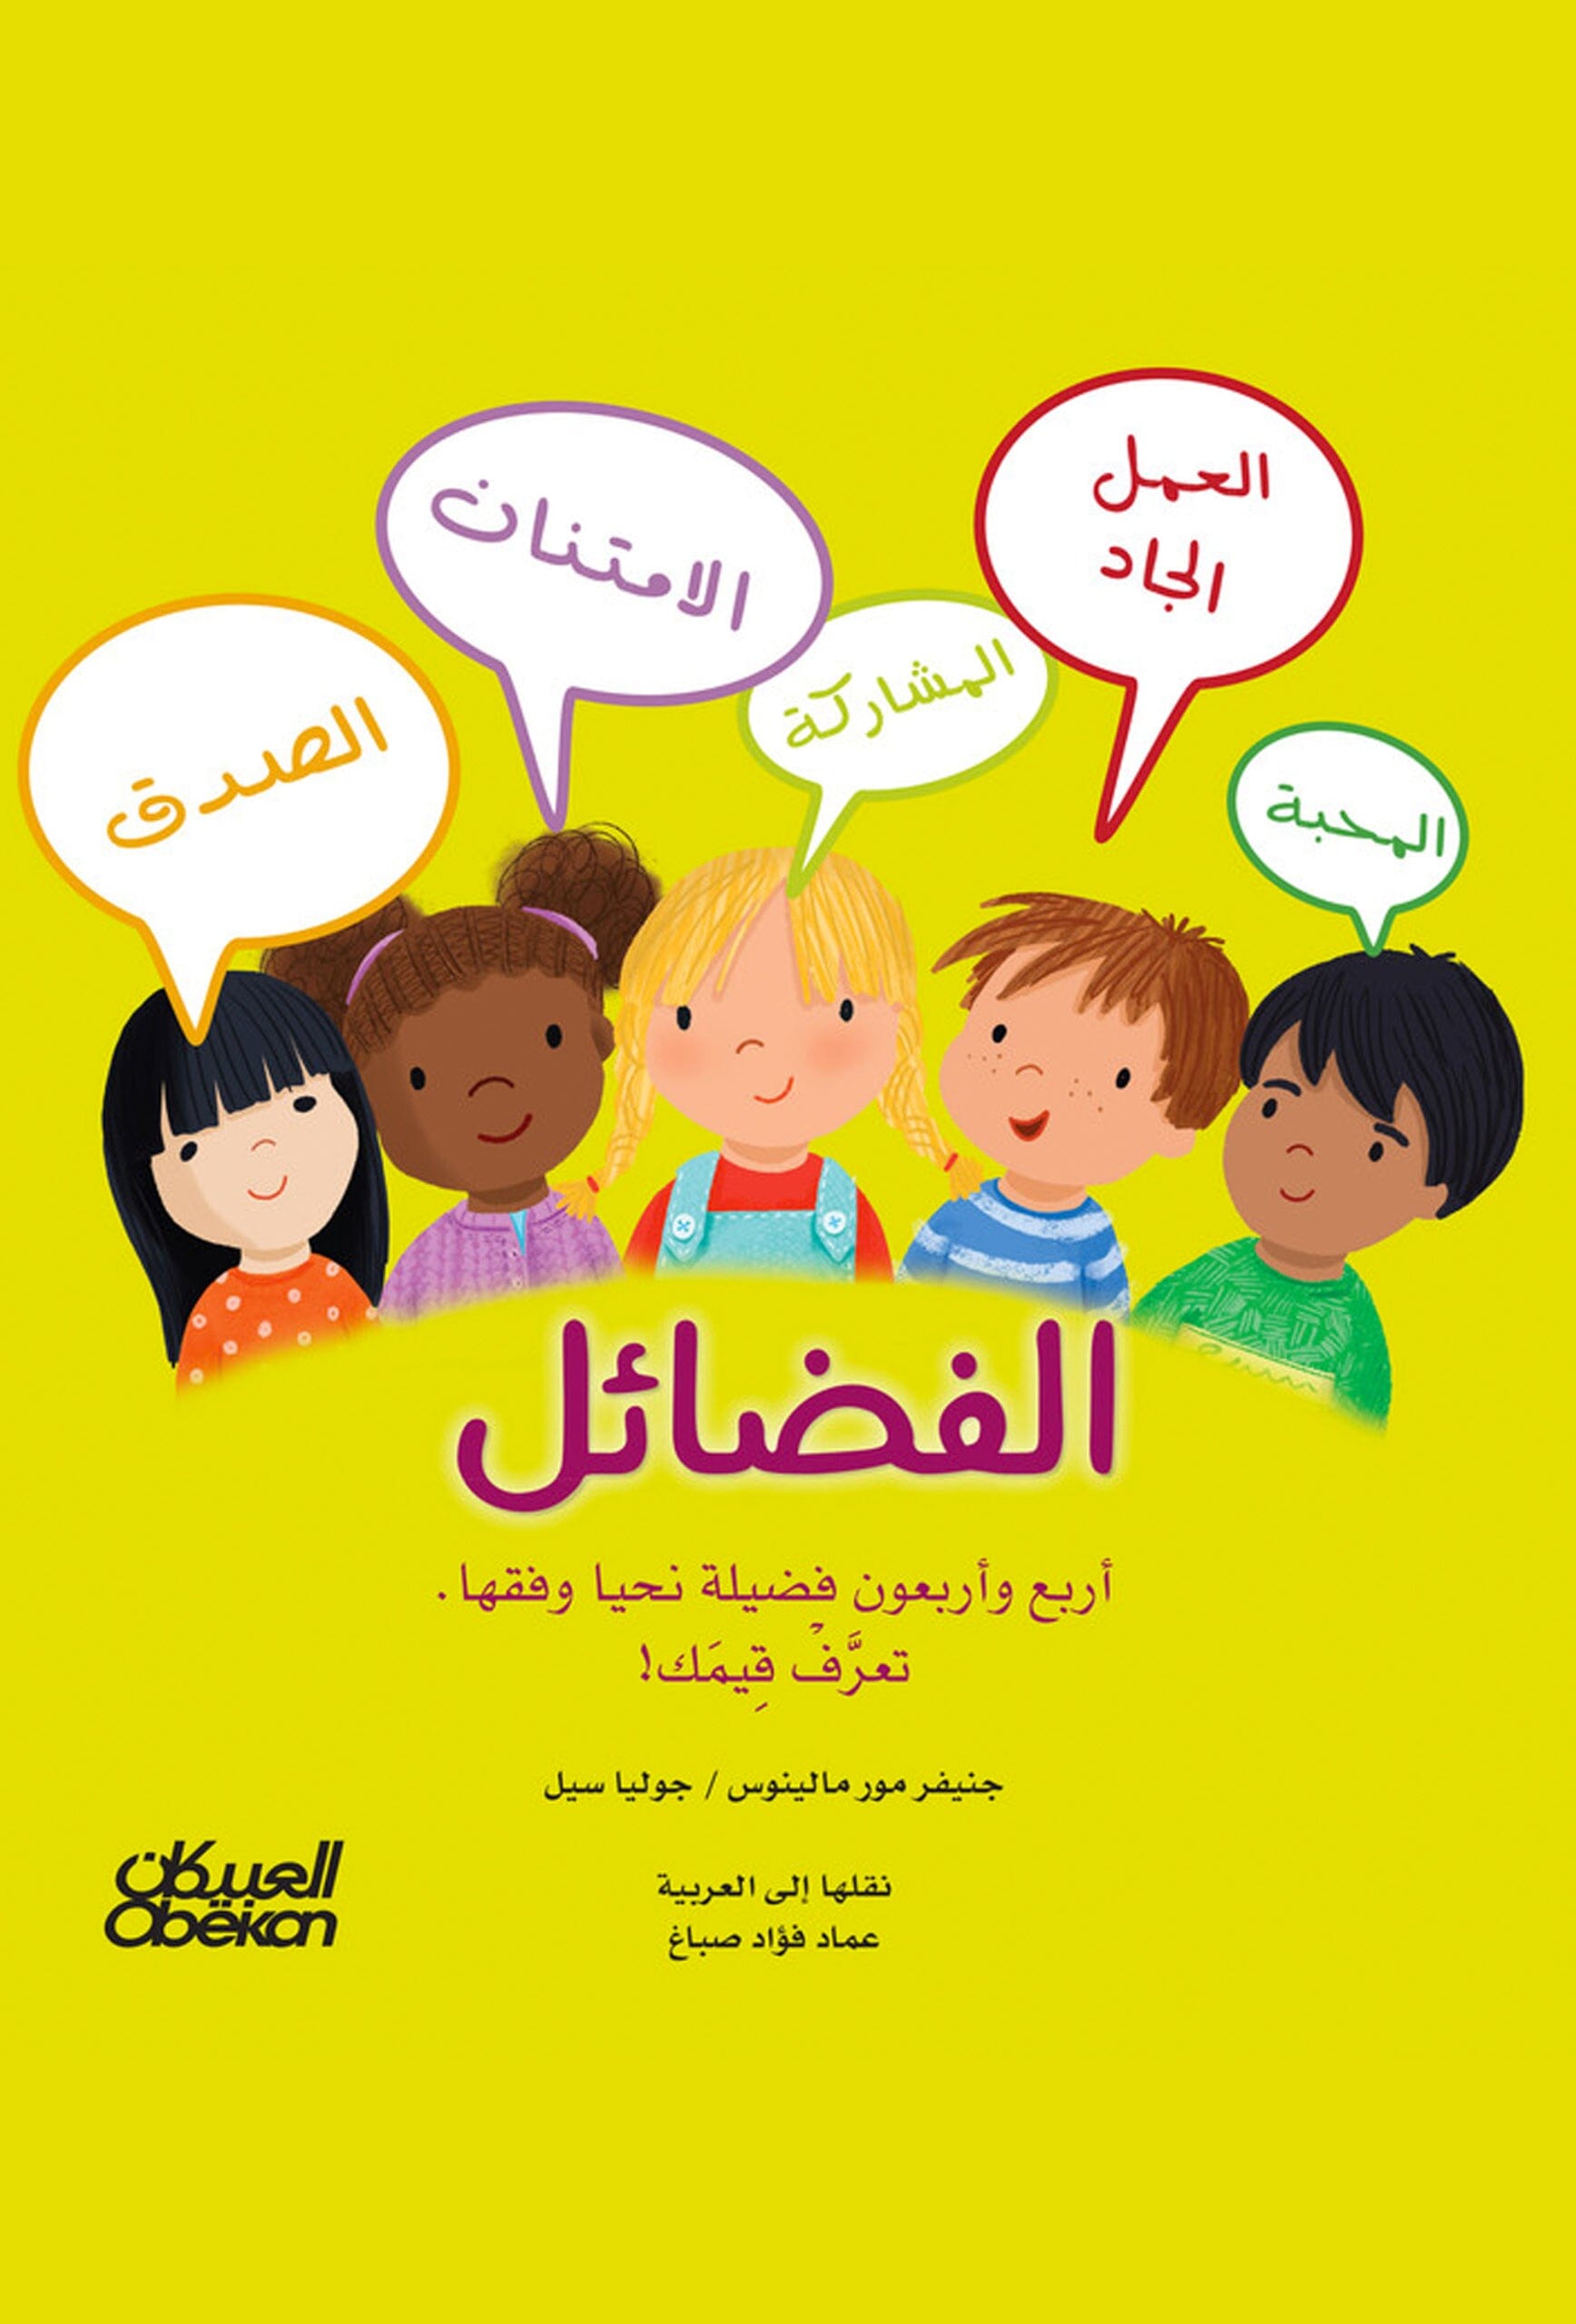 الفضائل أربع وأربعون فضيلة نحيا وفقها : عربي - إنجليزي كتب أطفال جنيفر مور مالينوس و جوليا سيل 